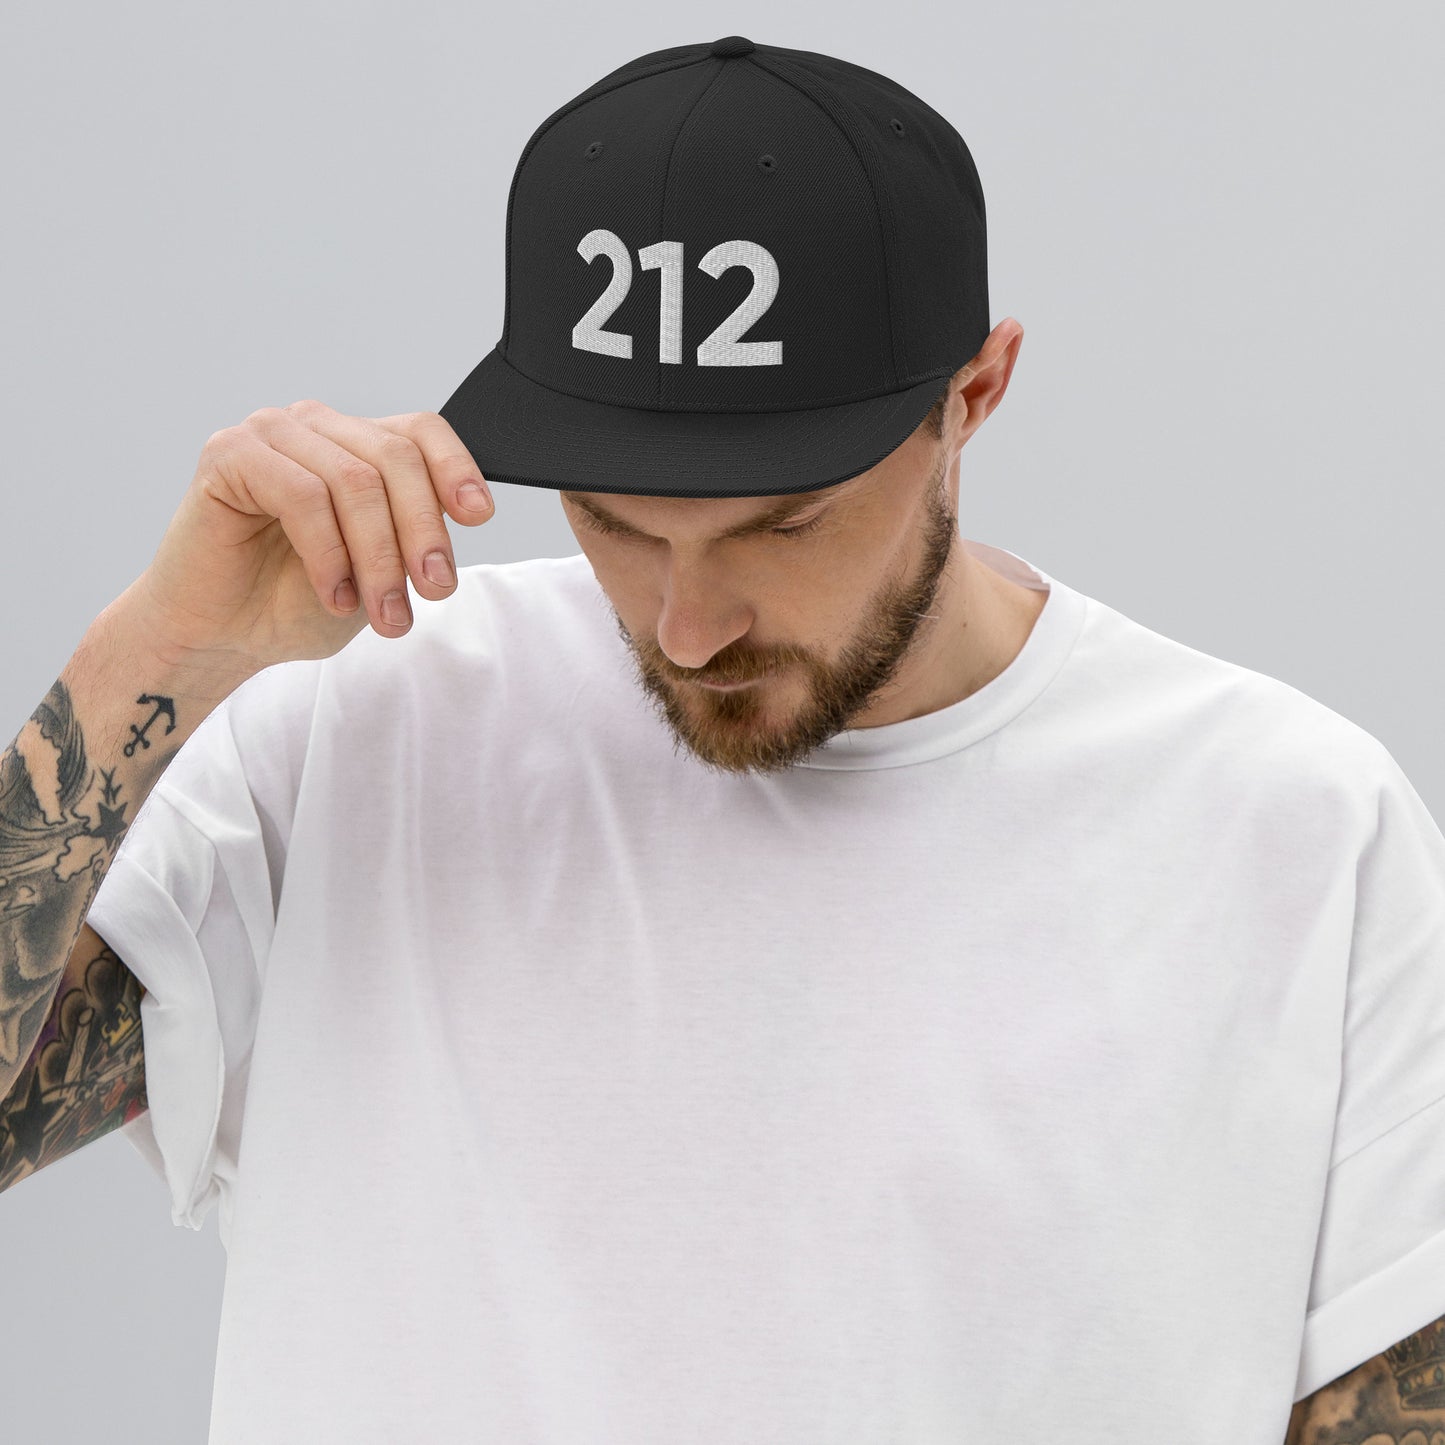 212 NYC Classic Flatbrim Hat